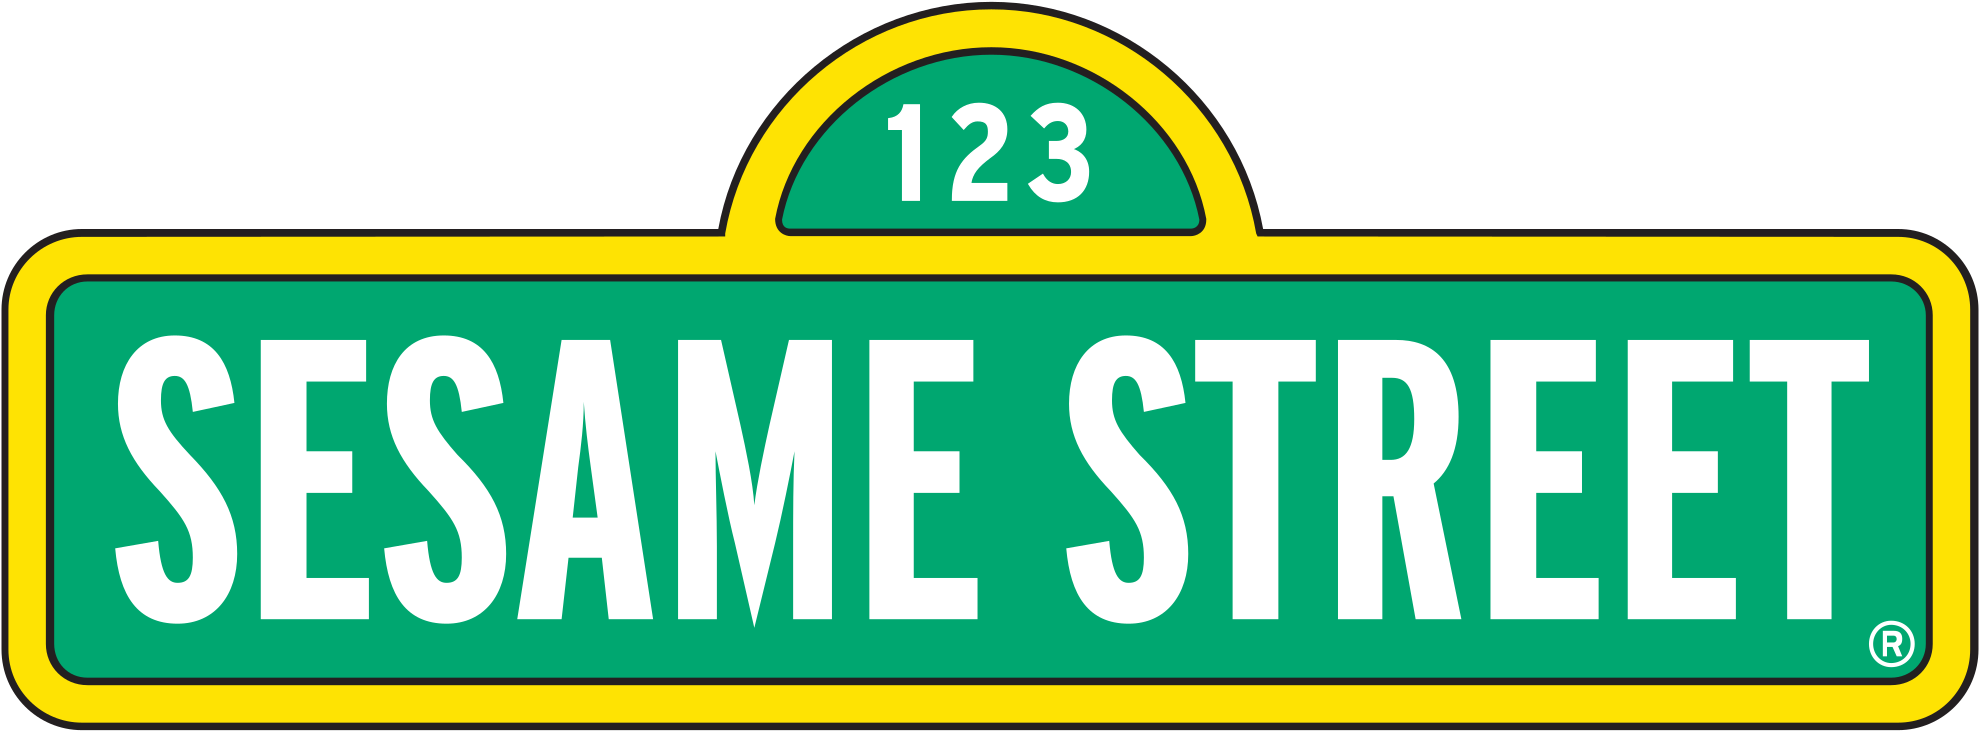 320 × 121 Pixels - Sesame Street Sign Cartoon Car Bumber Sticker Decal (1200x453)